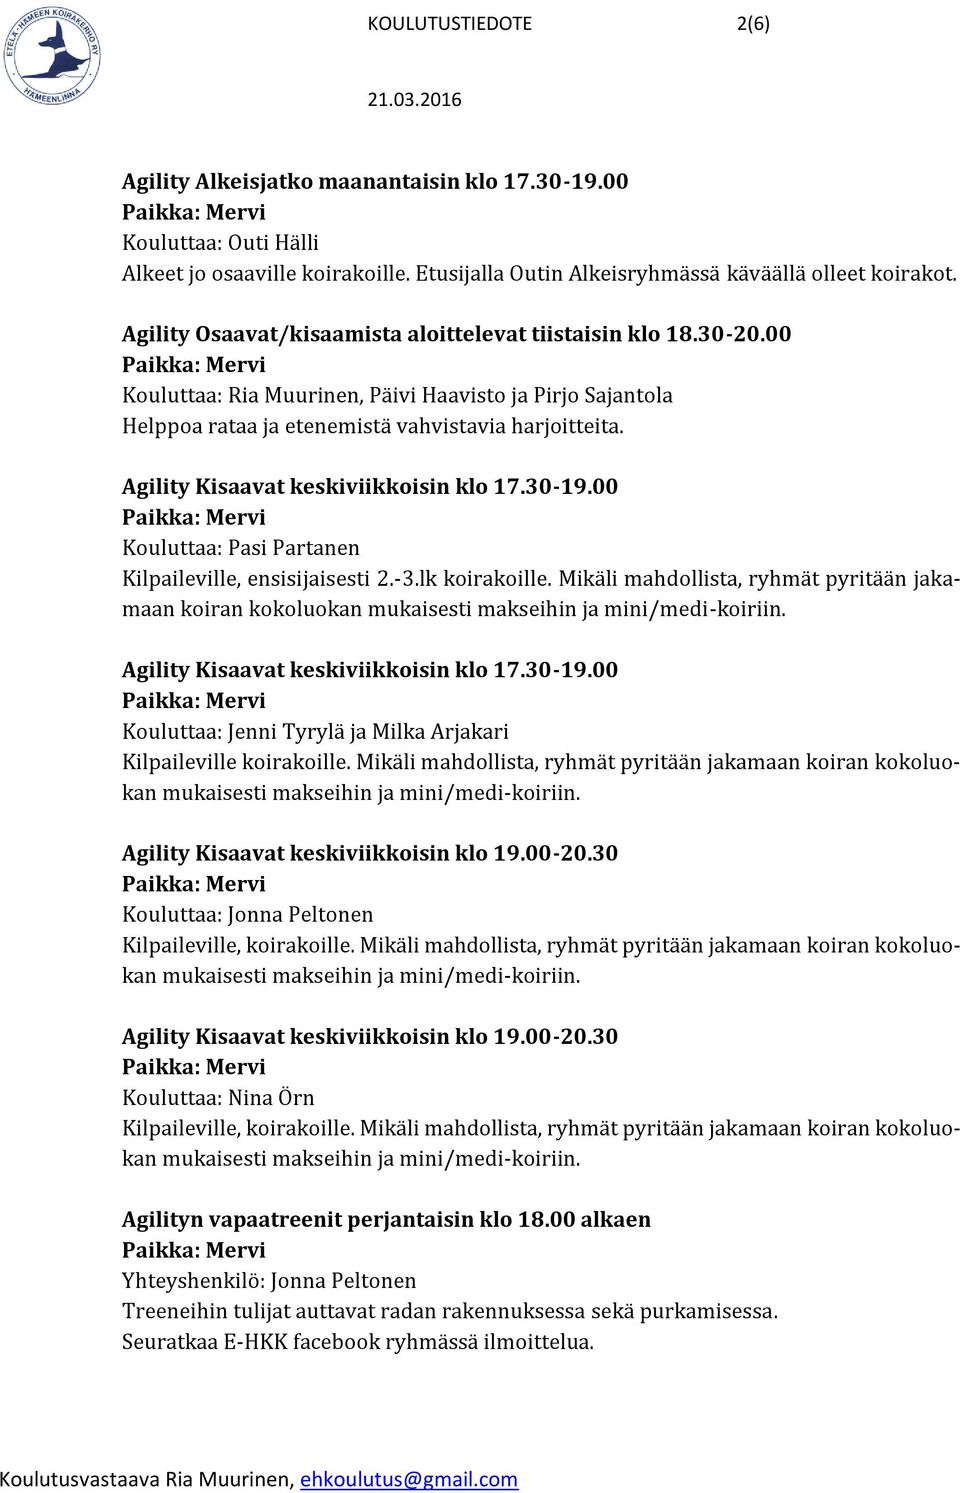 Agility Kisaavat keskiviikkoisin klo 17.30-19.00 Kouluttaa: Pasi Partanen Kilpaileville, ensisijaisesti 2.-3.lk koirakoille.